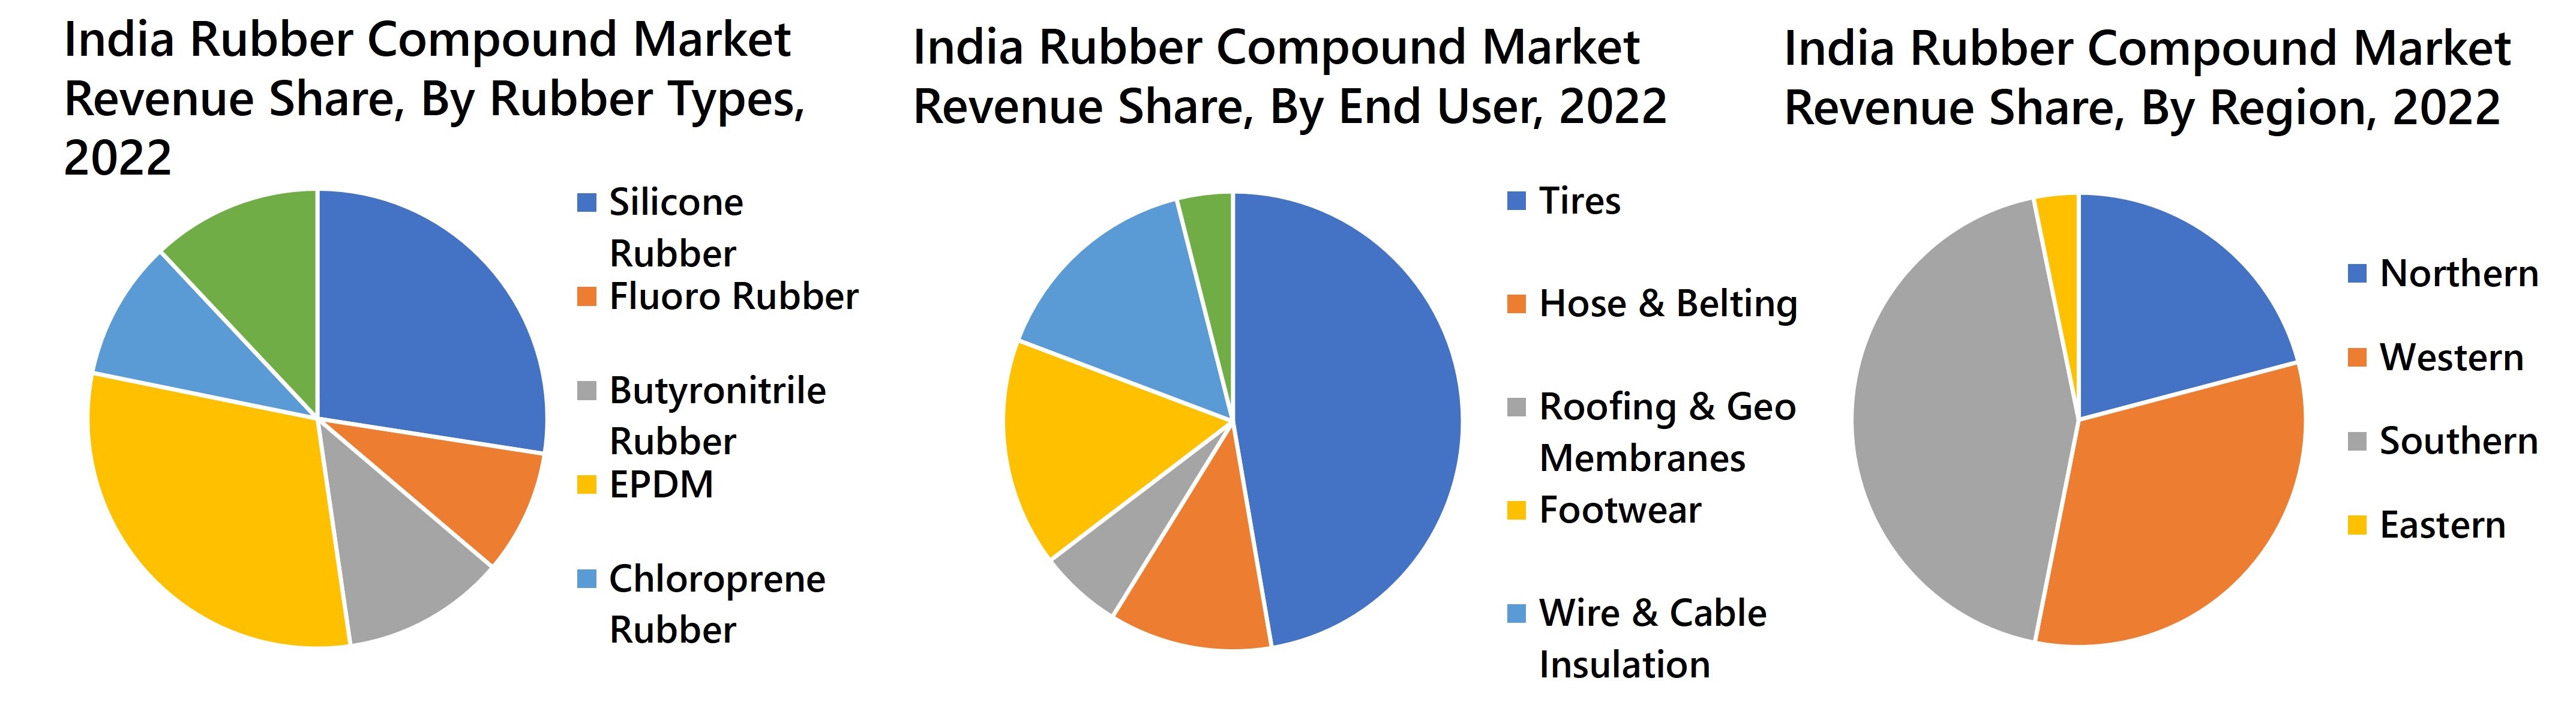 India Rubber Compound Market Revenue Share